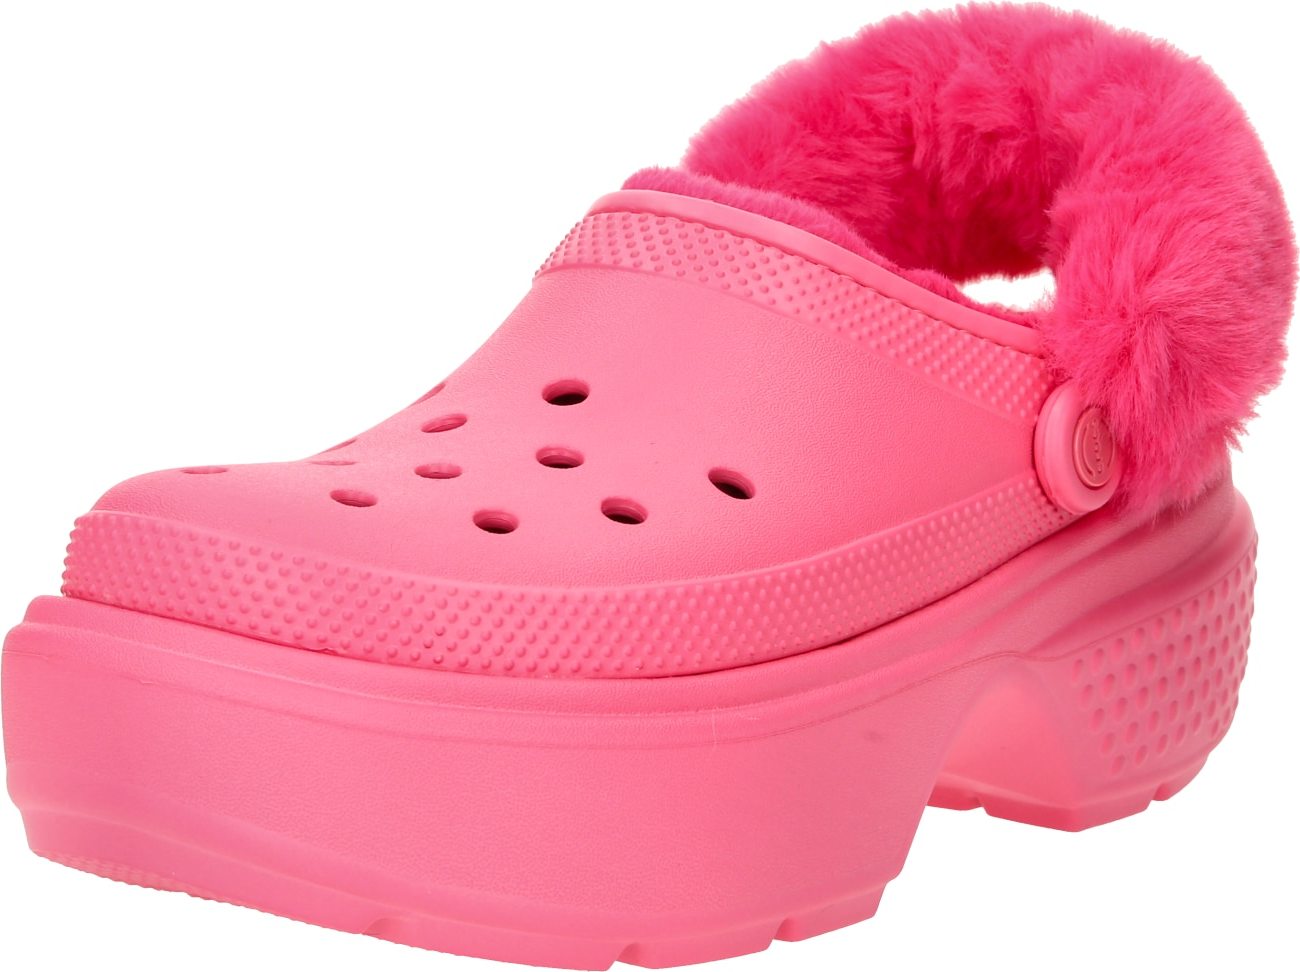 Pantofle 'Stomp' Crocs pink